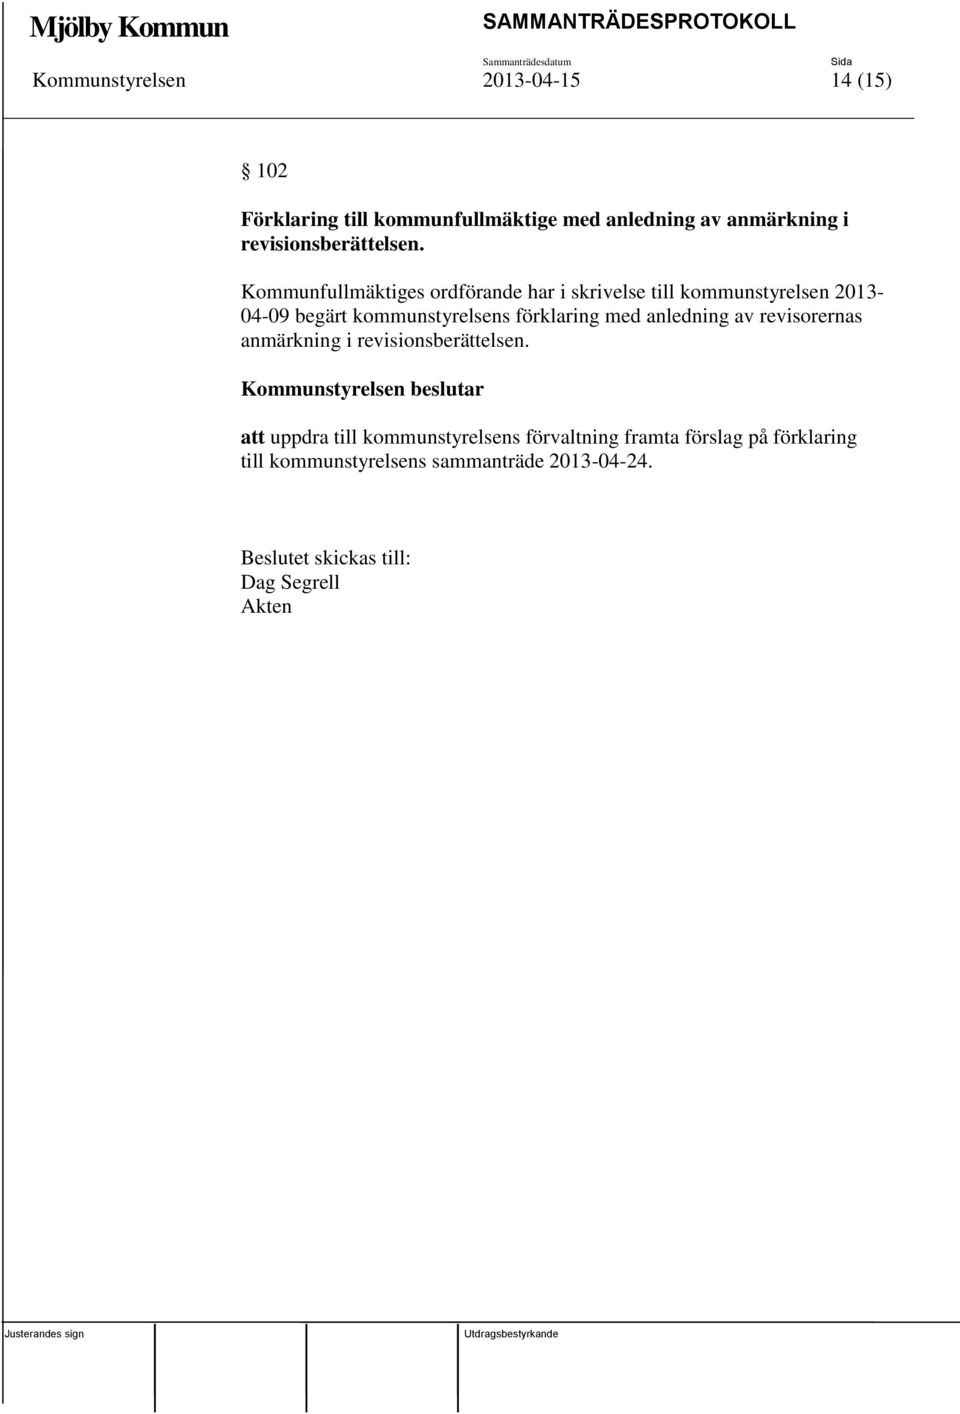 Kommunfullmäktiges ordförande har i skrivelse till kommunstyrelsen 2013-04-09 begärt kommunstyrelsens förklaring med